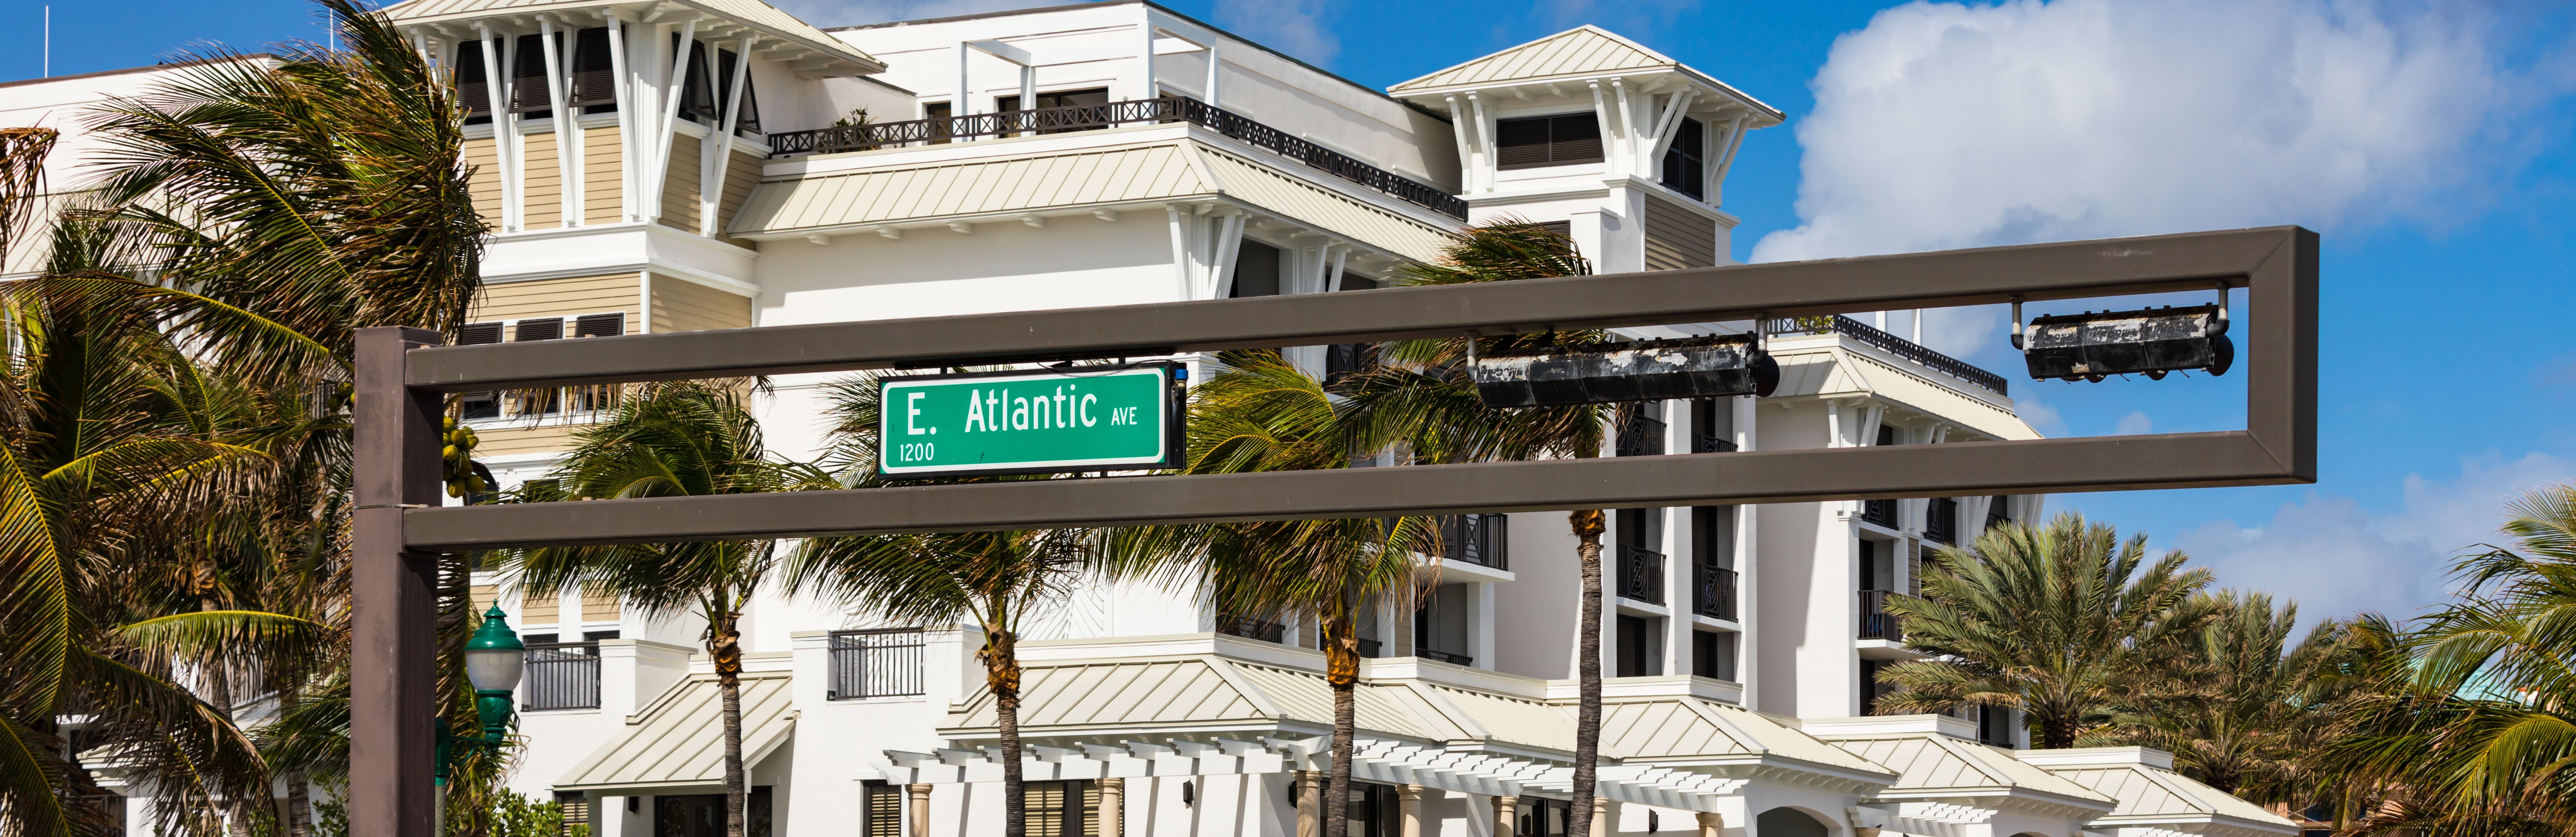 Atlantic Avenue Sign